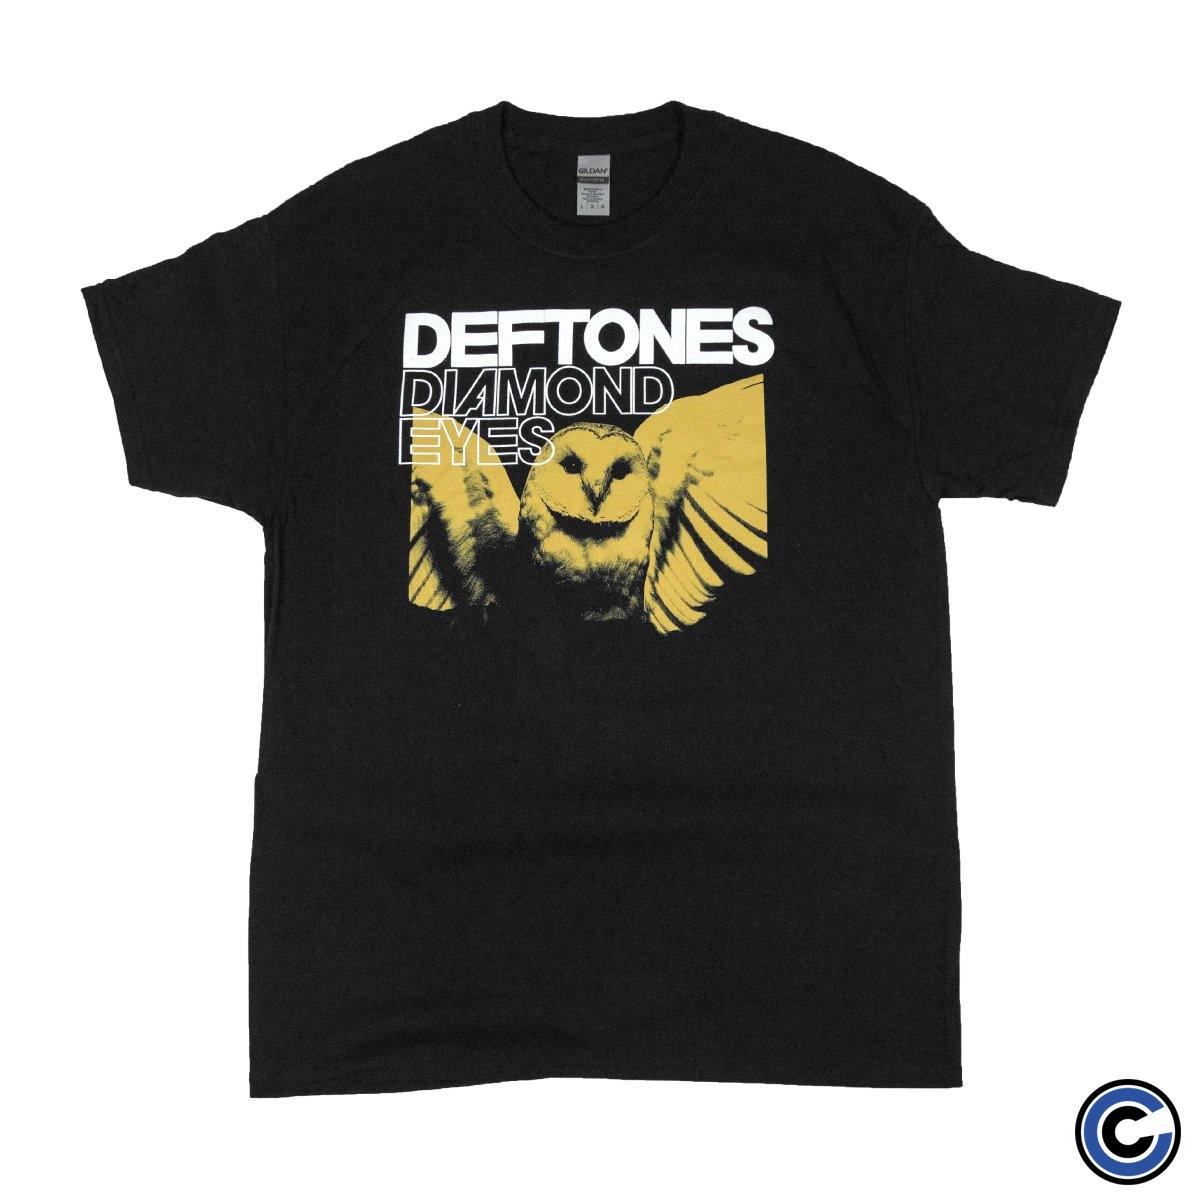 Buy – Deftones "Sepia Owl" Shirt – Band & Music Merch – Cold Cuts Merch